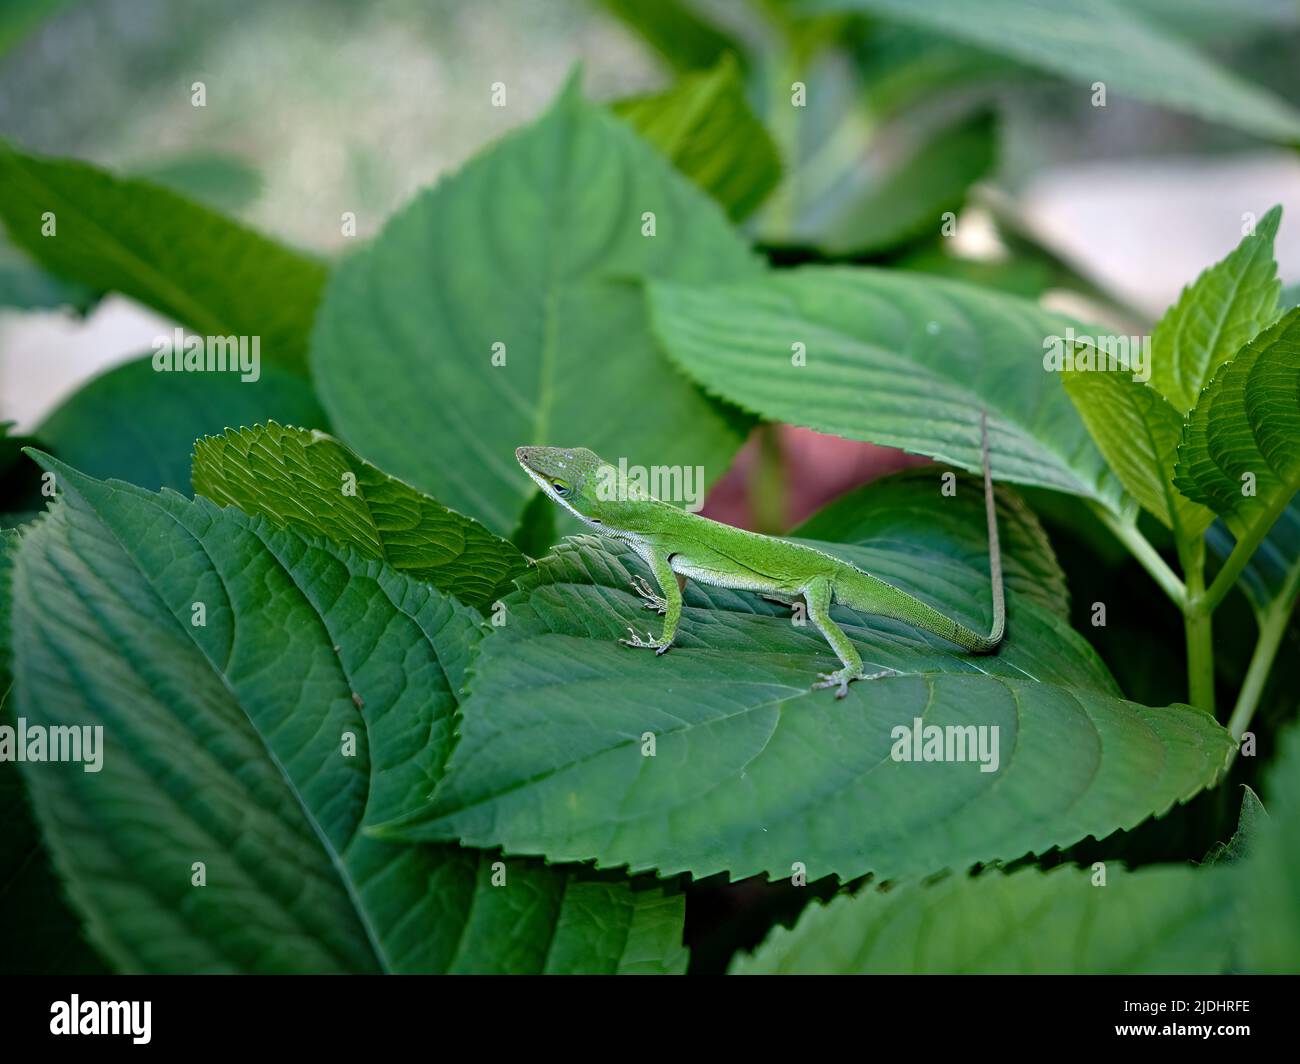 Anolis carolinensis o anolis verde también conocido como un lagarto de árbol verde que descansa sobre hojas verdes en un jardín en Alabama, Estados Unidos. Foto de stock